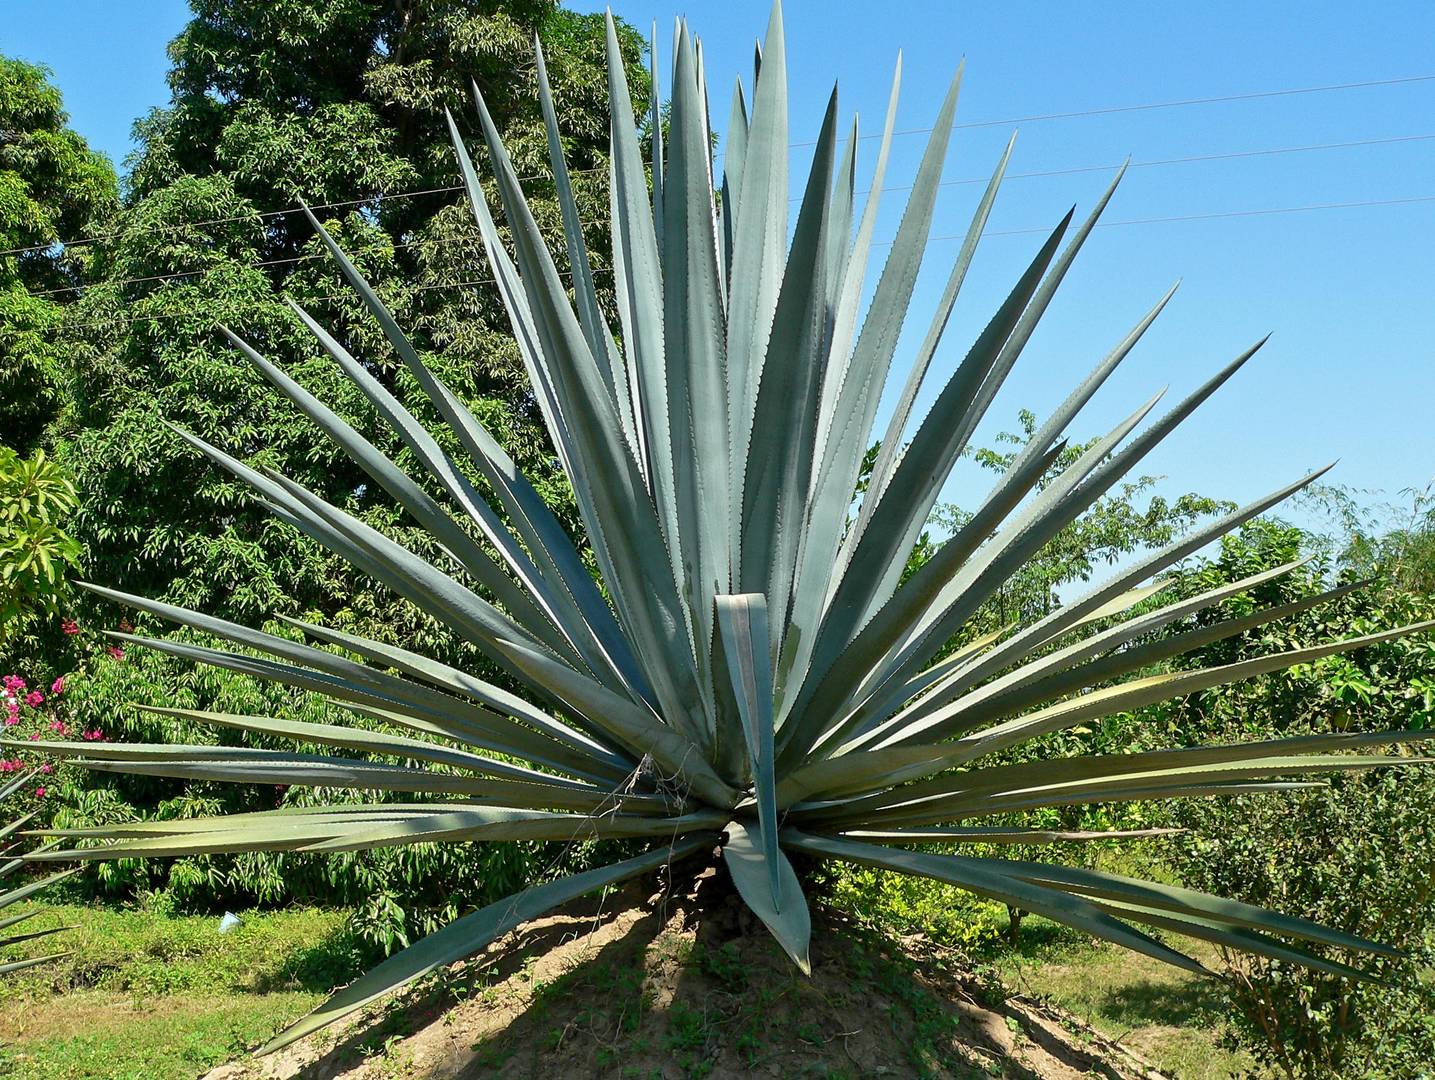 Растительность мексики